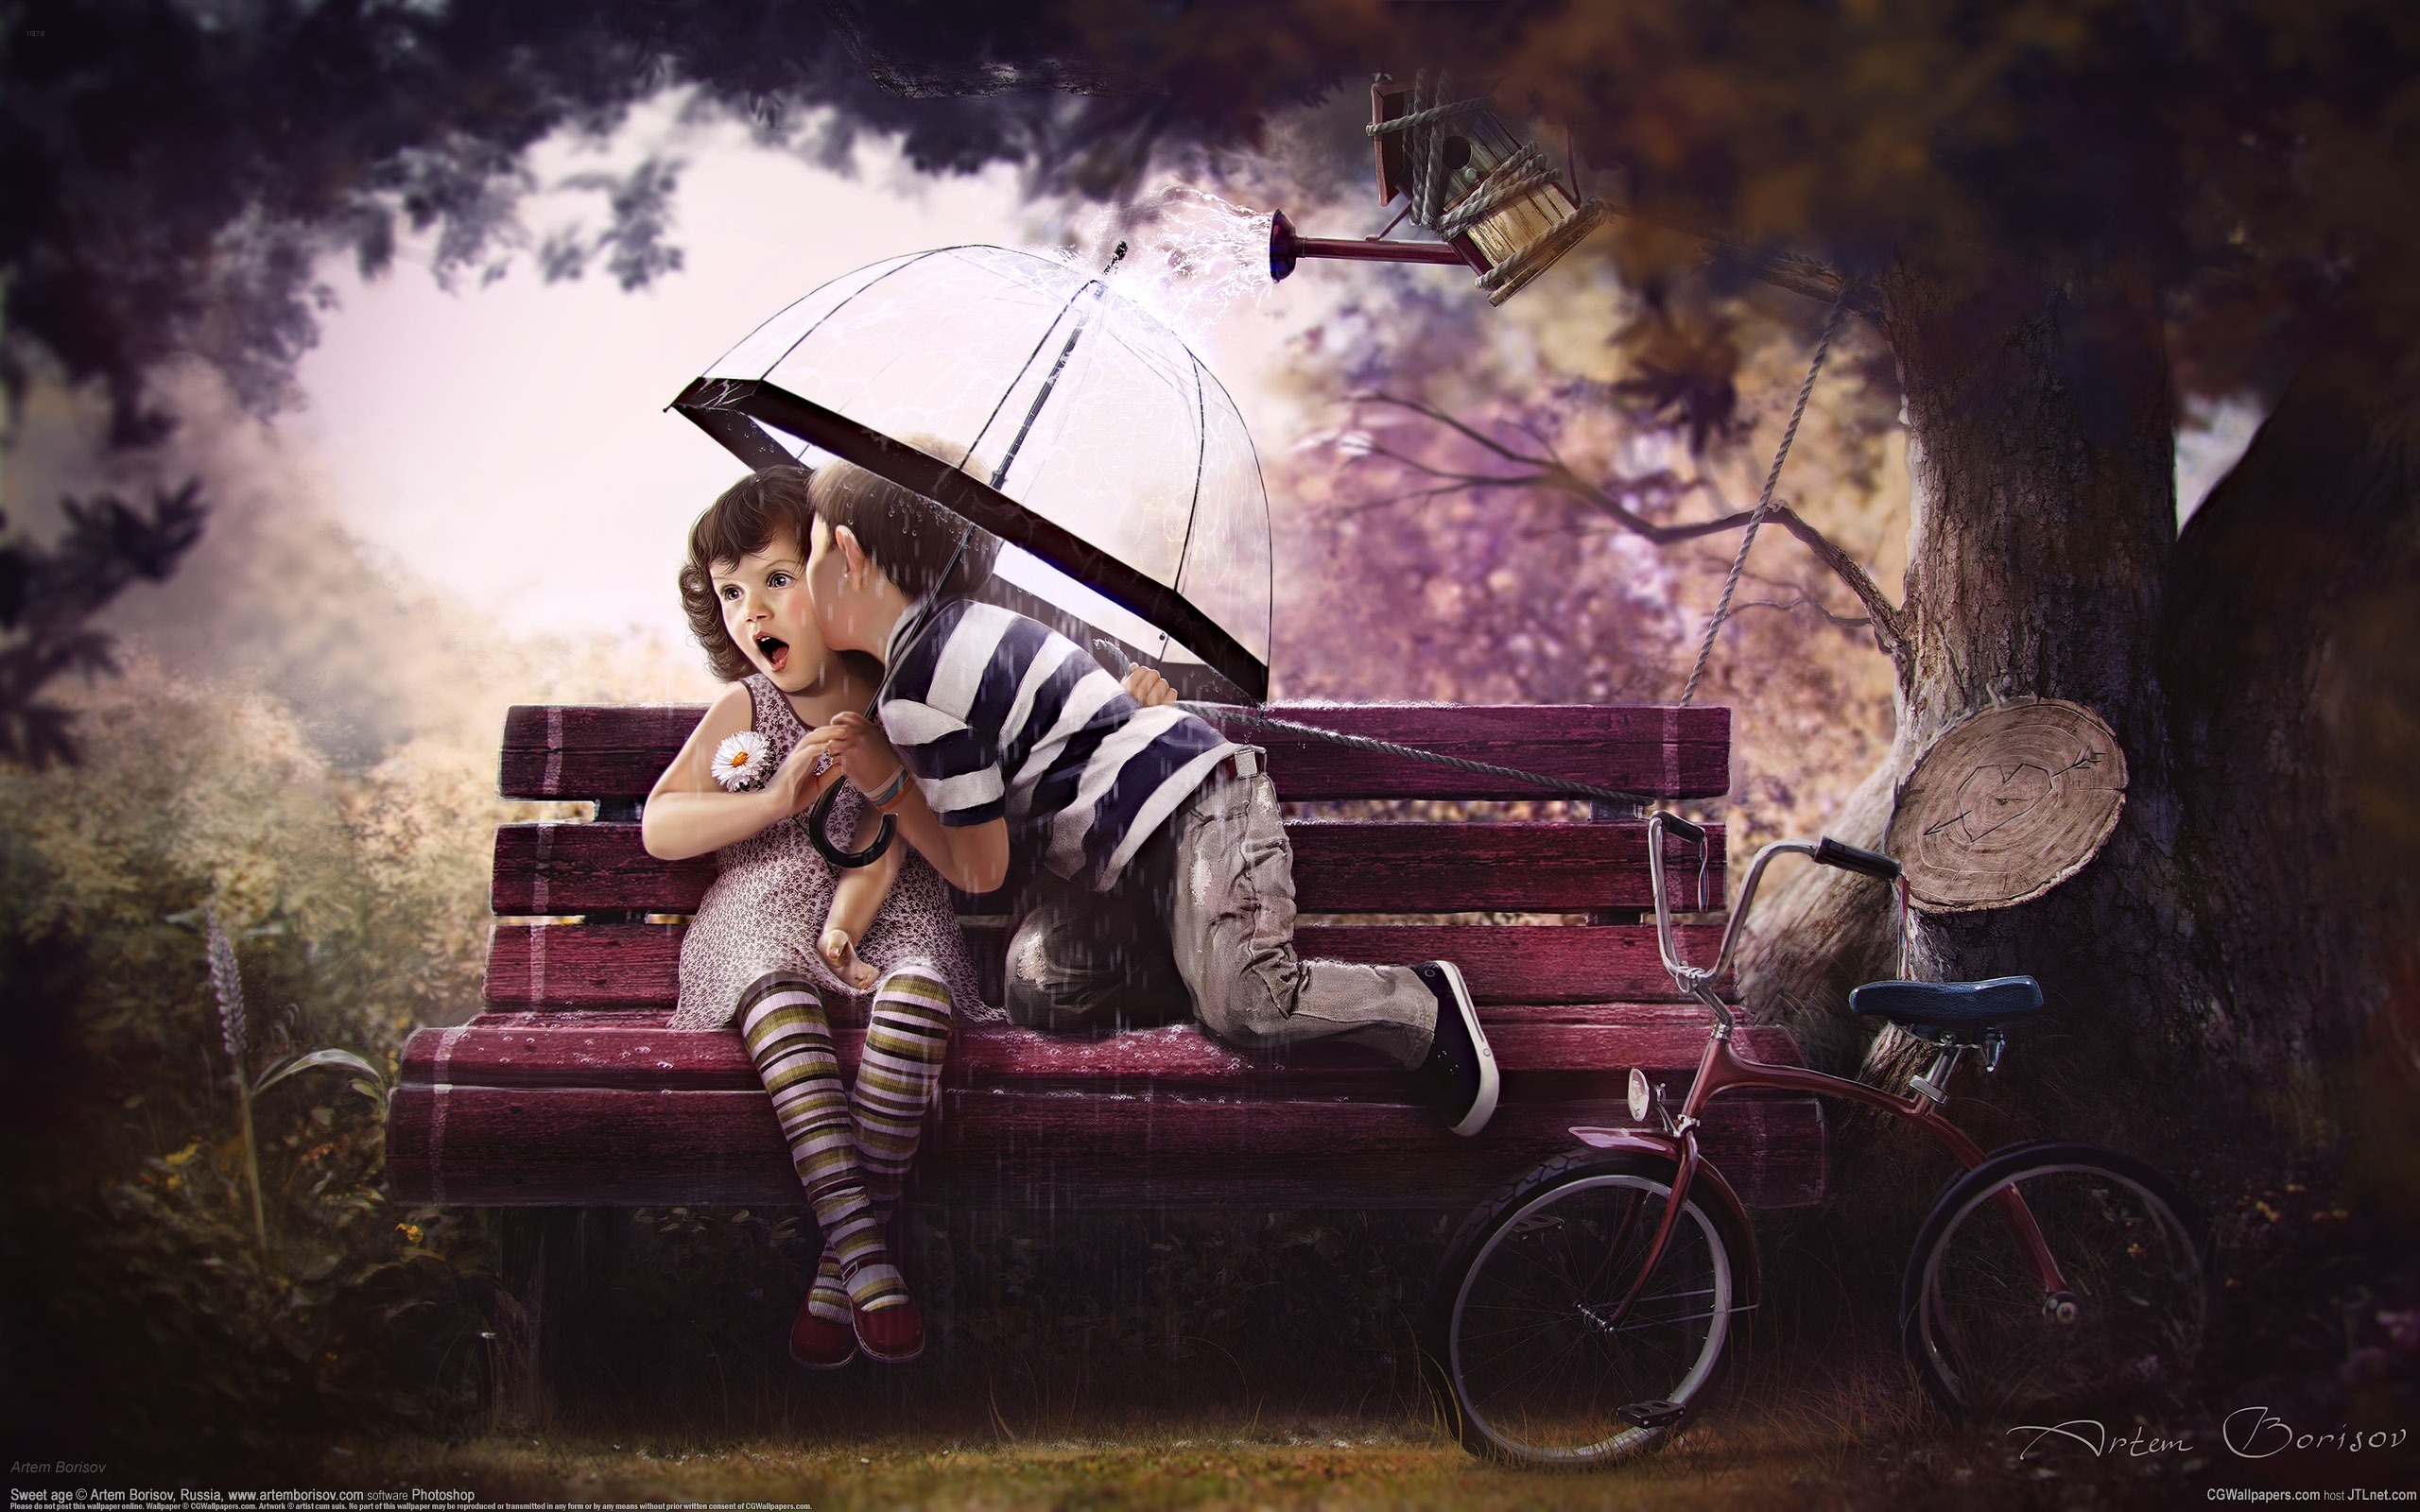 3d обои Дети на скамейке, мальчик целует девочку сидящую под зонтом, спасаясь от дождика из лейки  дождь # 34300